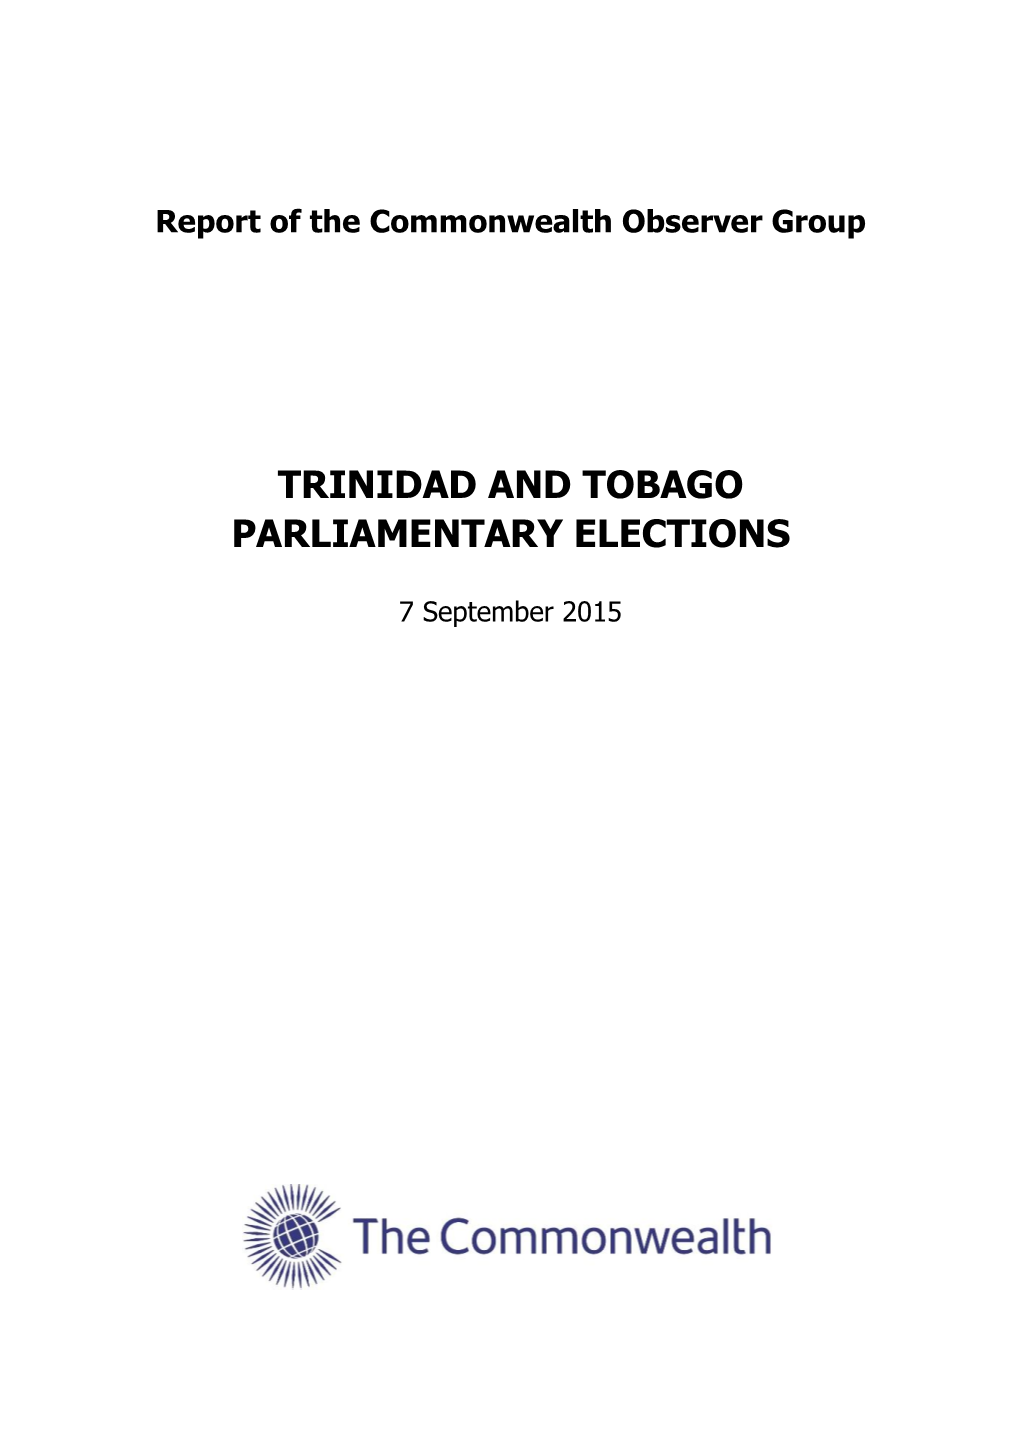 Trinidad and Tobago Parliamentary Elections